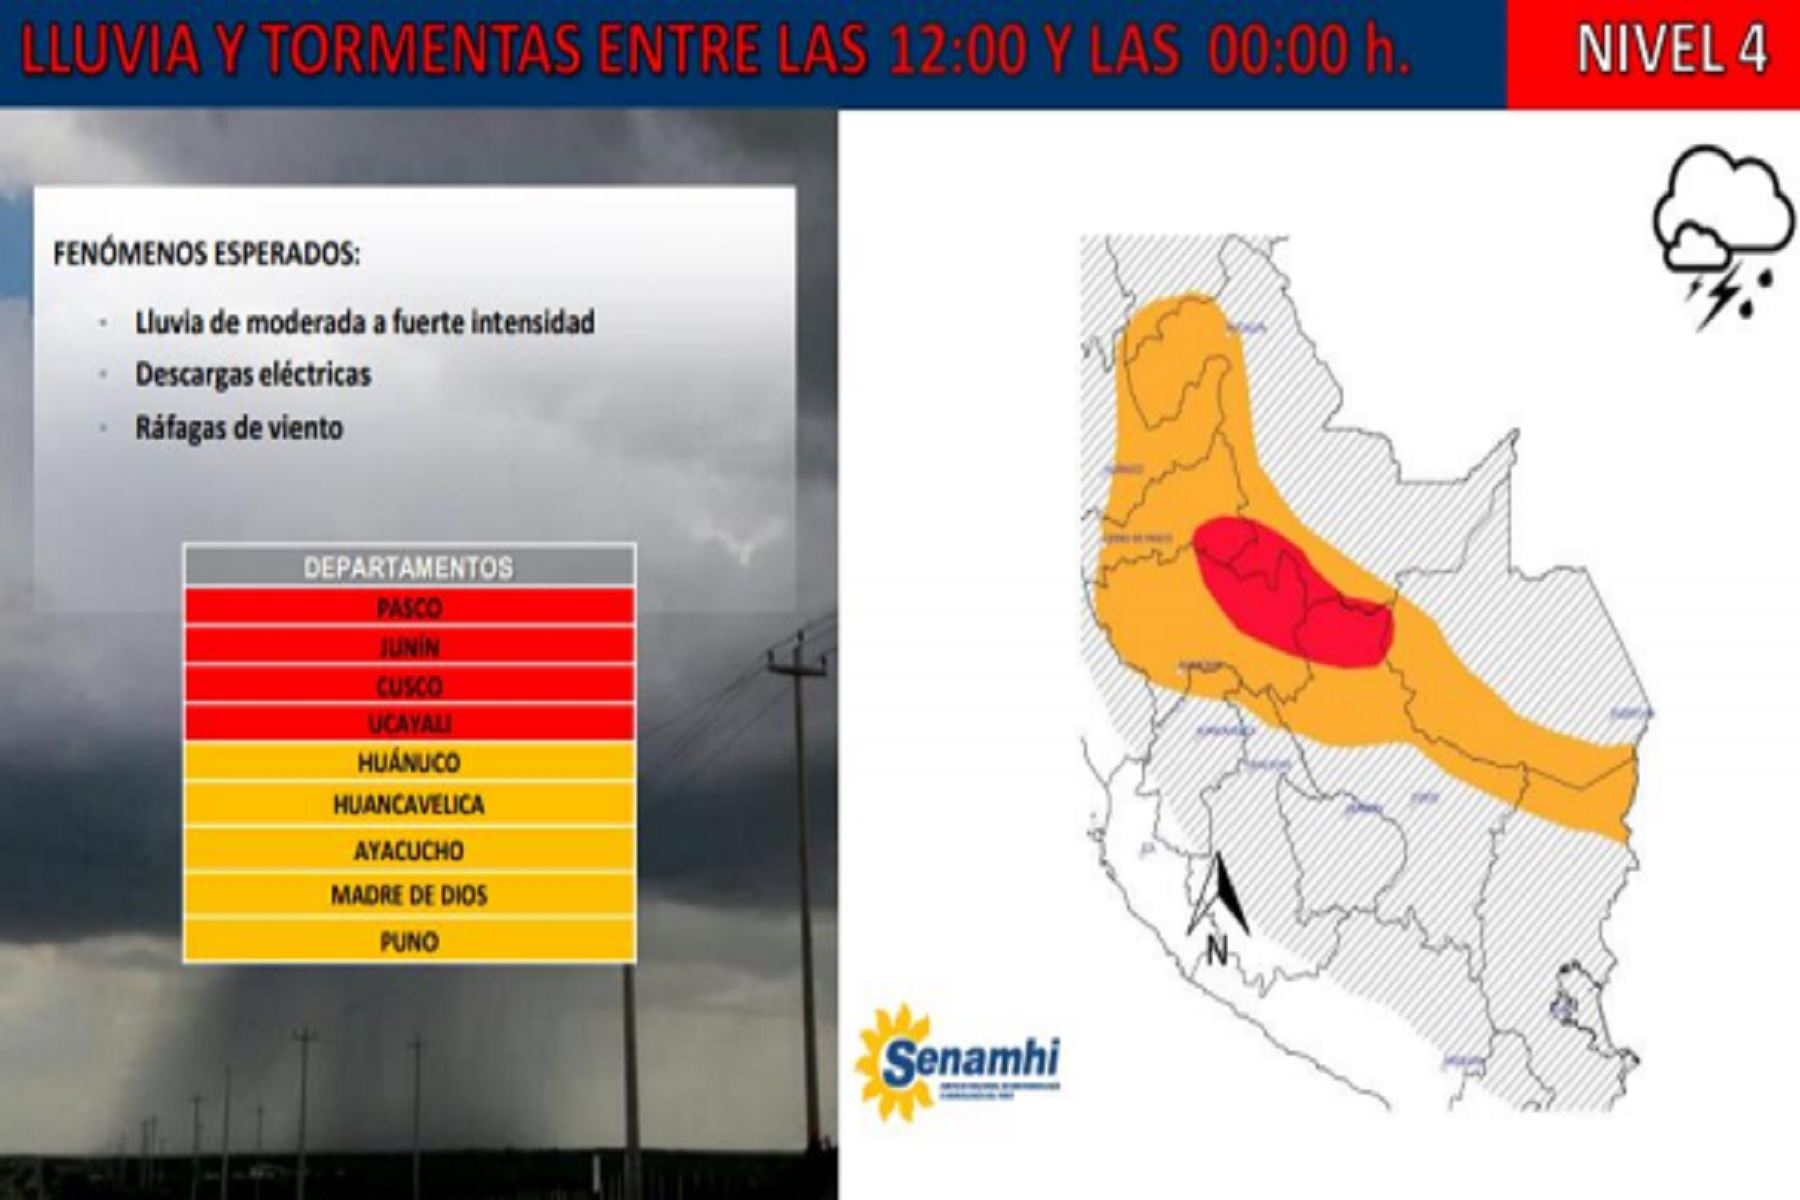 Lluvias de menor intensidad se presentarán en las regiones Huánuco, Huancavelica, Ayacucho, Madre de Dios y Puno.